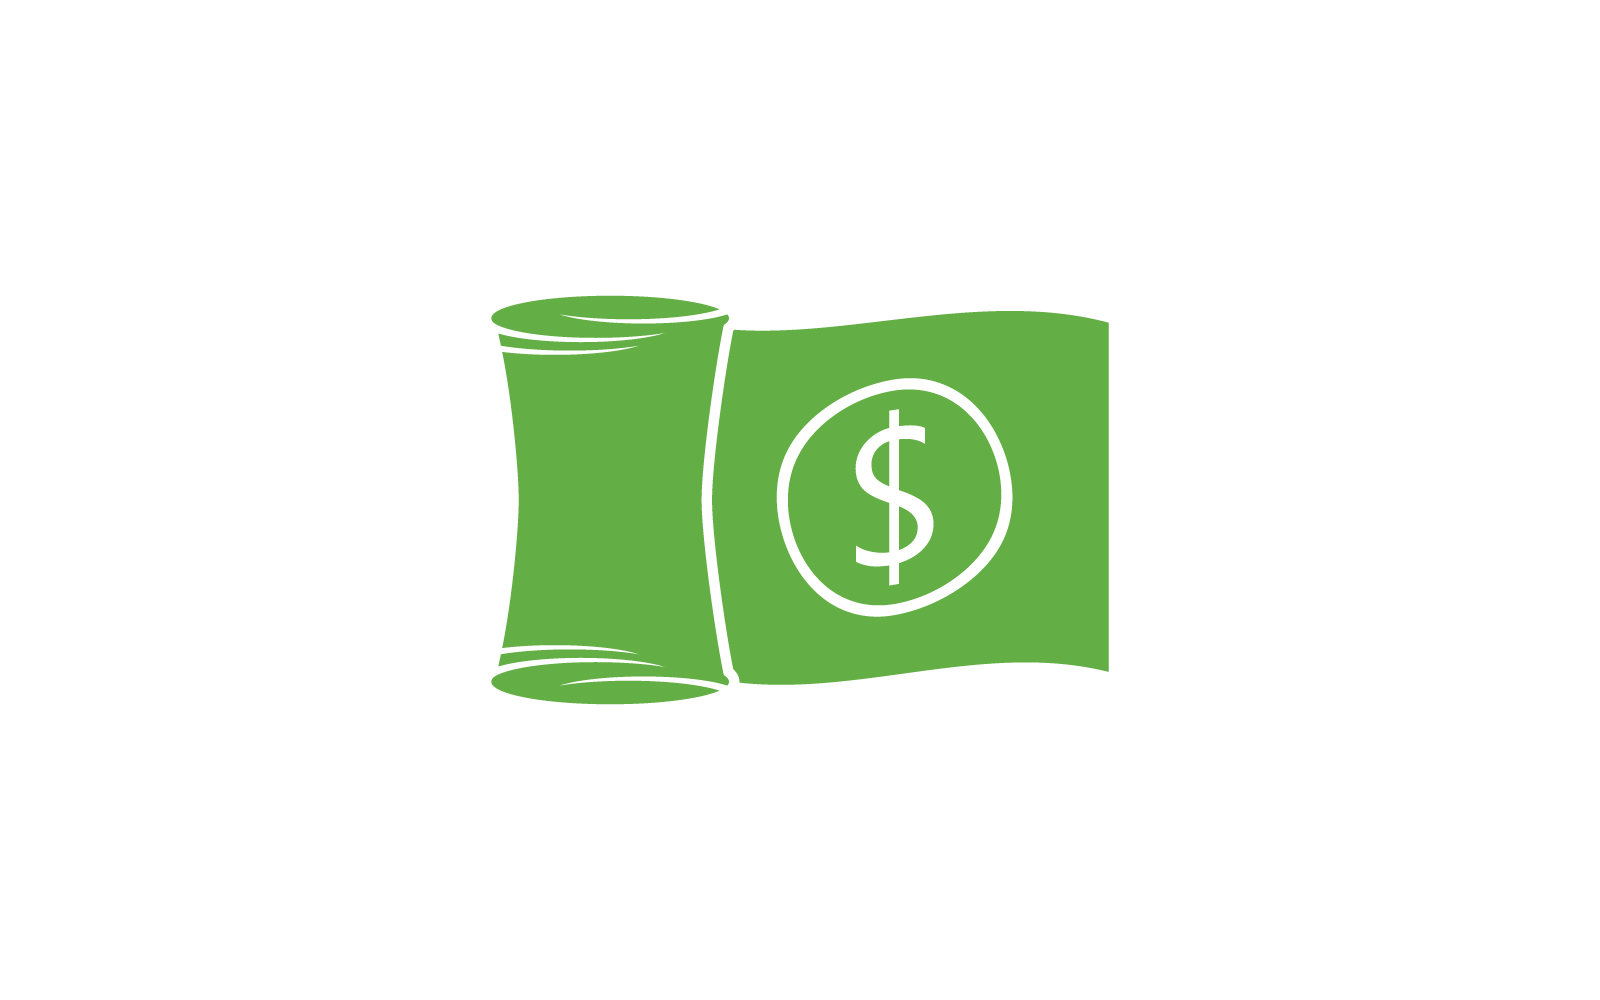 Бизнес деньги банковский логотип иллюстрации вектор плоский дизайн